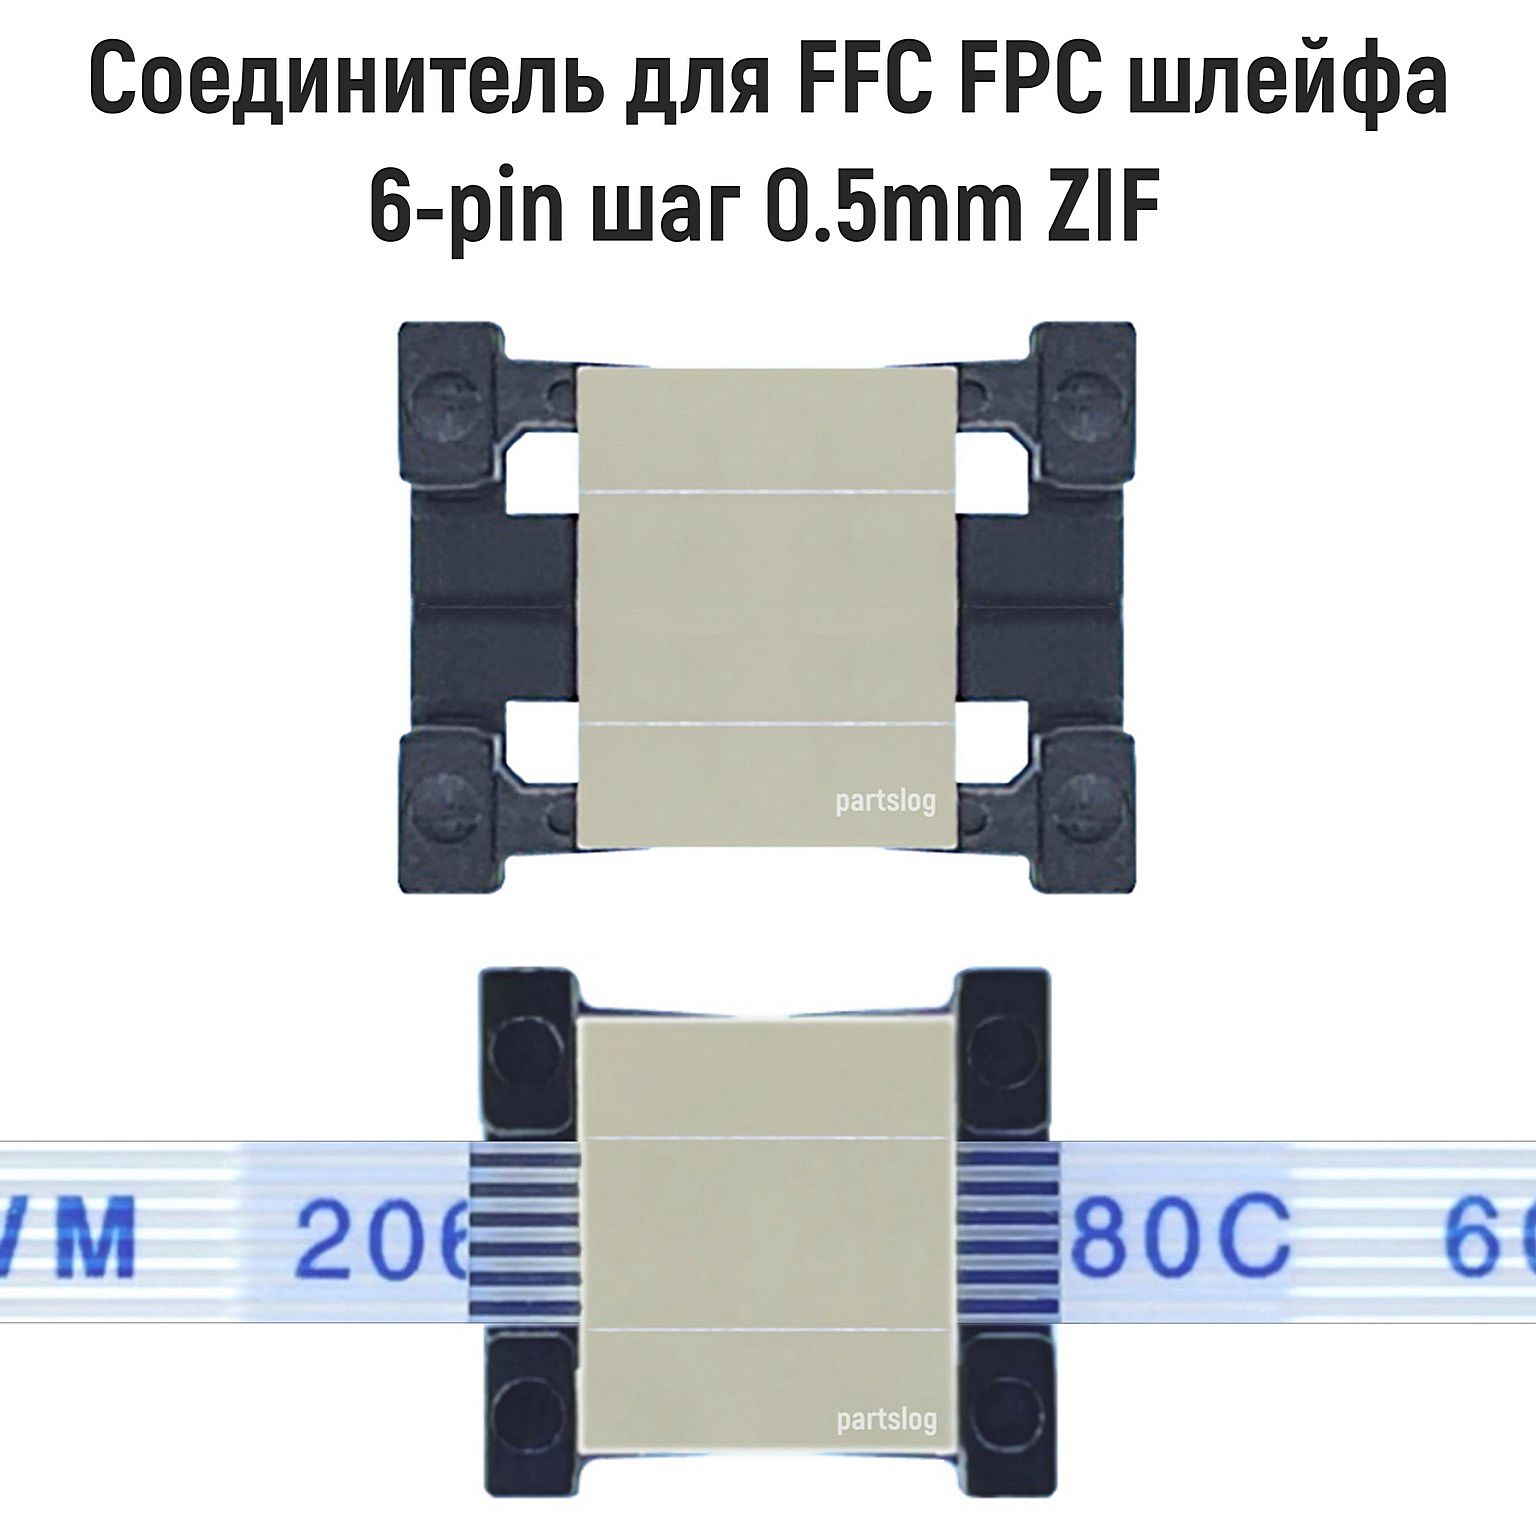 УдлинительдляFFCFPCшлейфа6-pinшаг0.5mmZIF(адаптерсоединительпереходник)